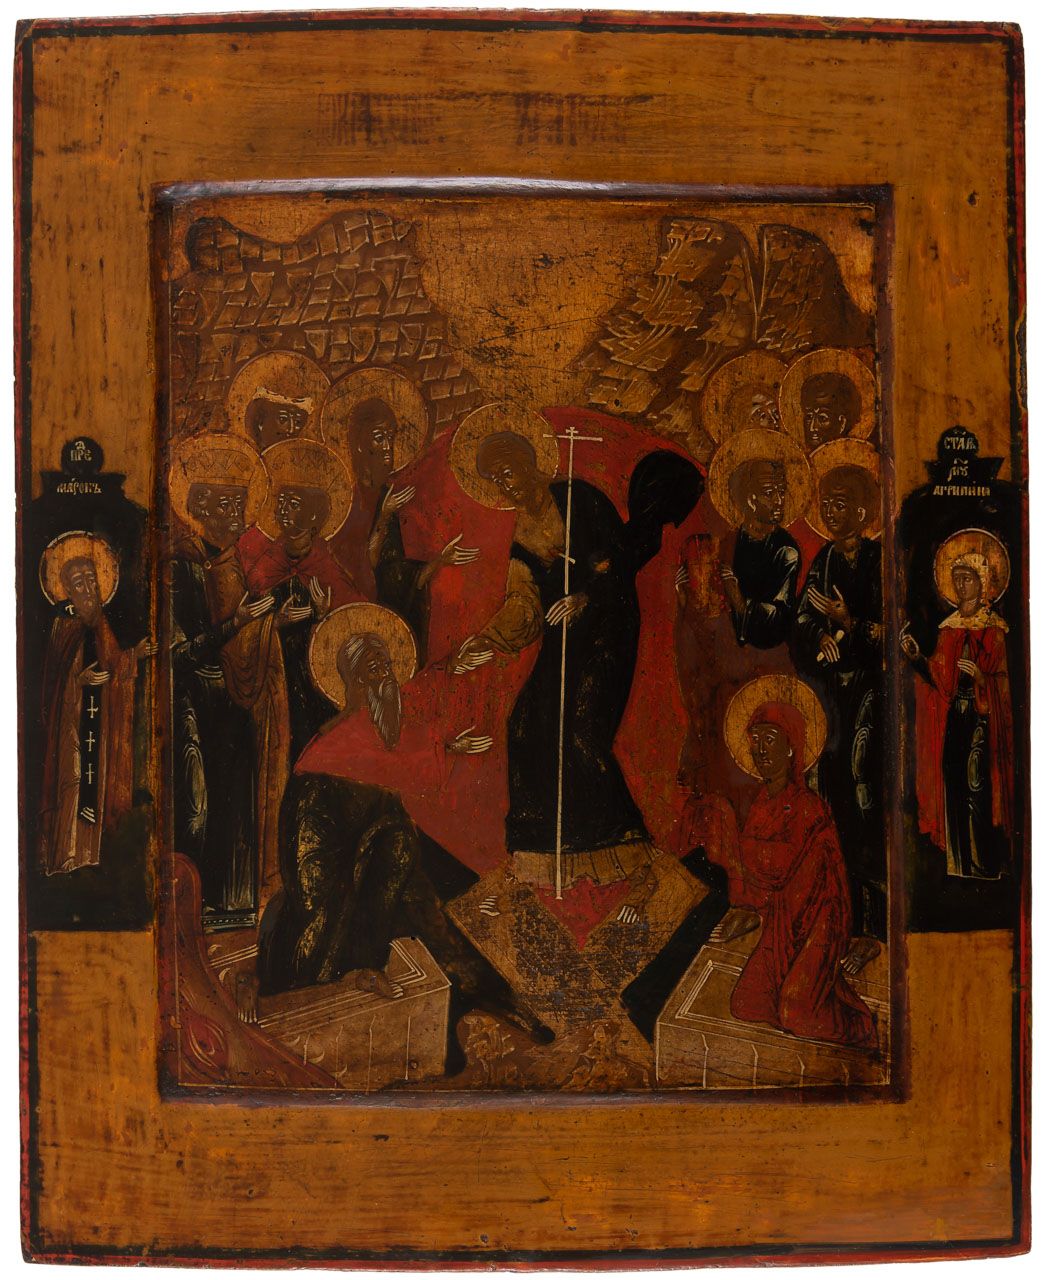 HADESFAHRT CHRISTI Icône de Pâques russe avec motif d'anastasis, 18e s.

33 x 27&hellip;